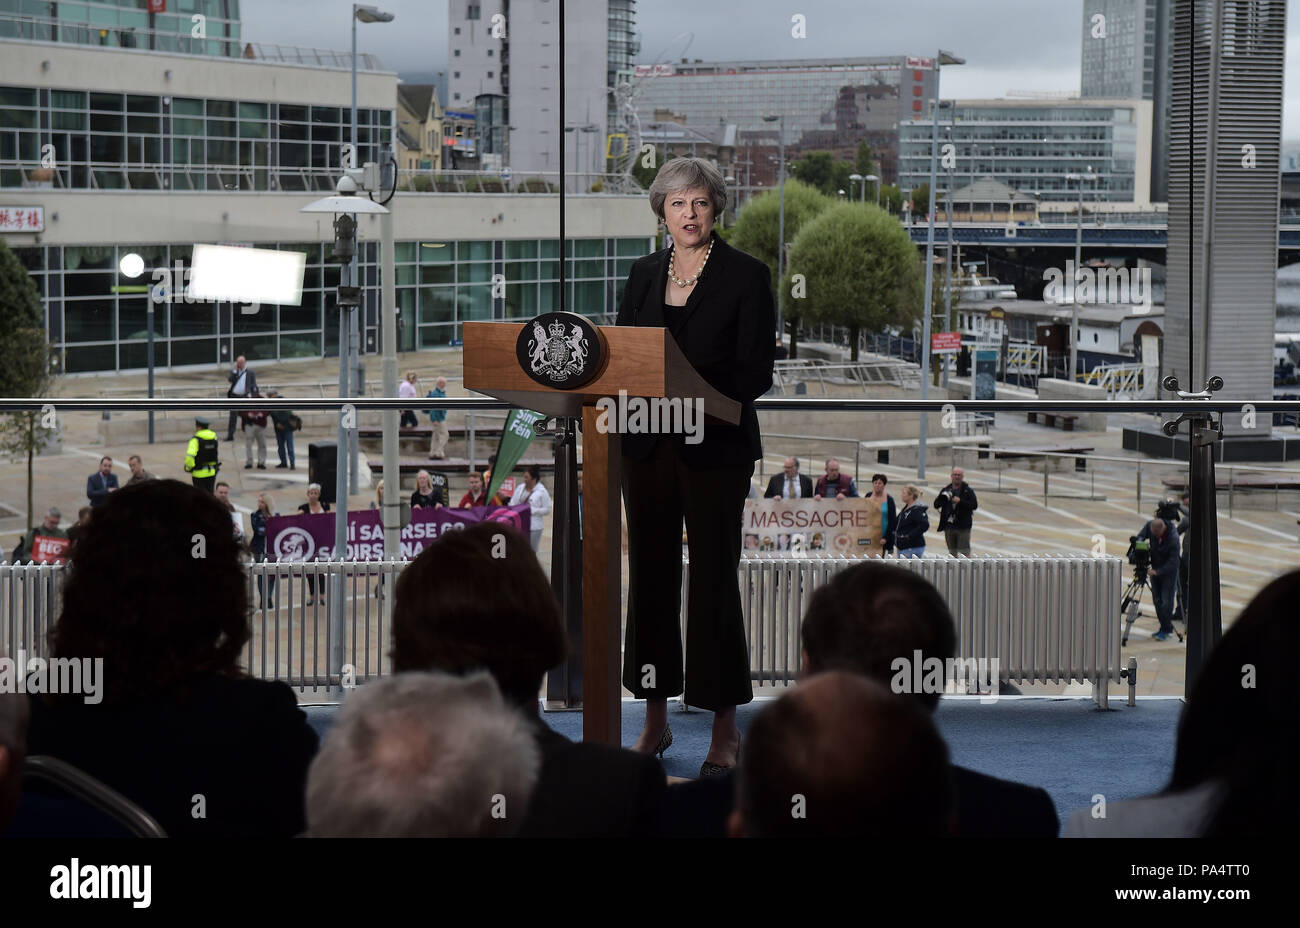 La primera ministra Theresa May durante su discurso en el Waterfront Hall de Belfast, donde instó a la Unión Europea a "evolucionar" su posición respecto del Brexit y no caer en ideas "inviables". Foto de stock